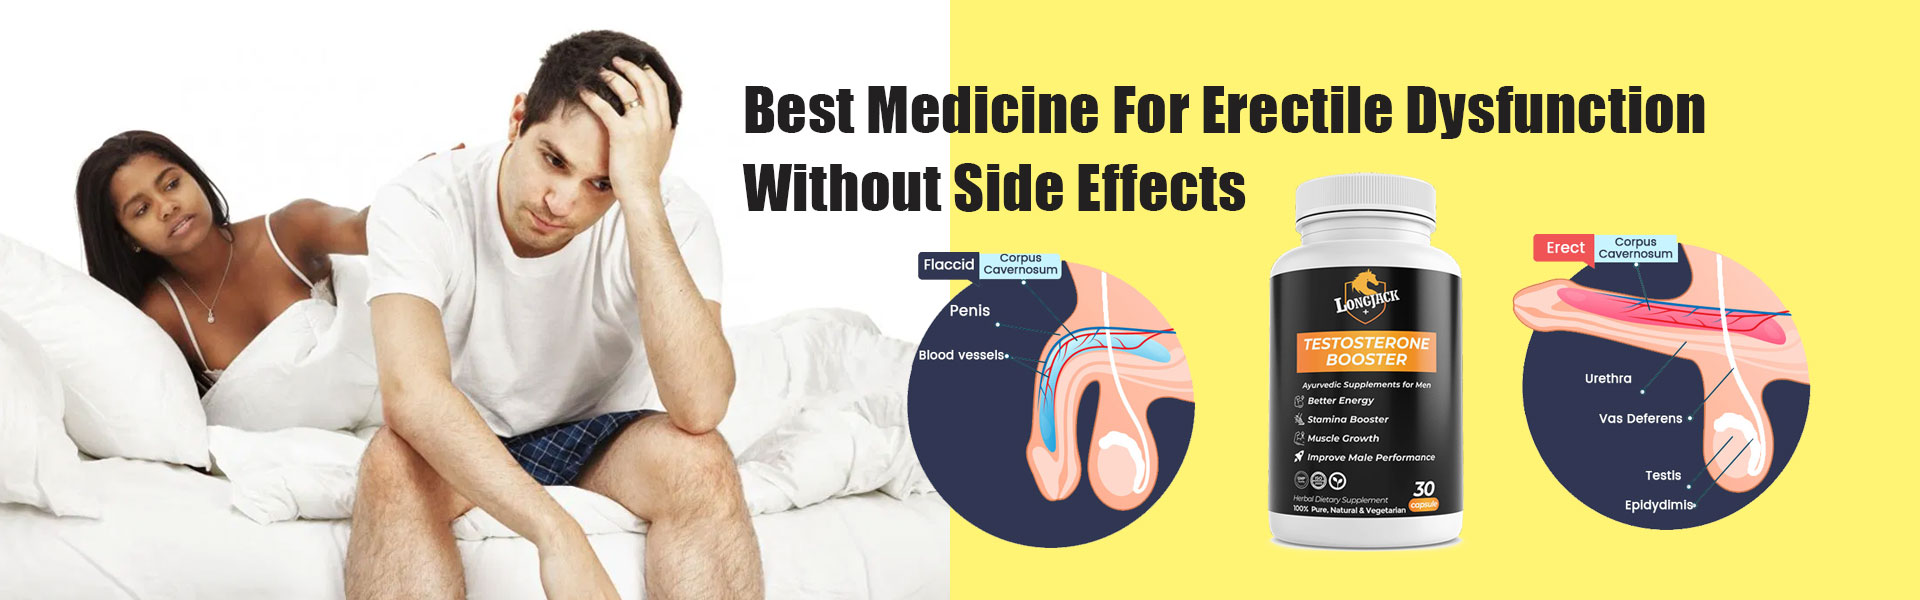 best medicine for erectile dysfunction